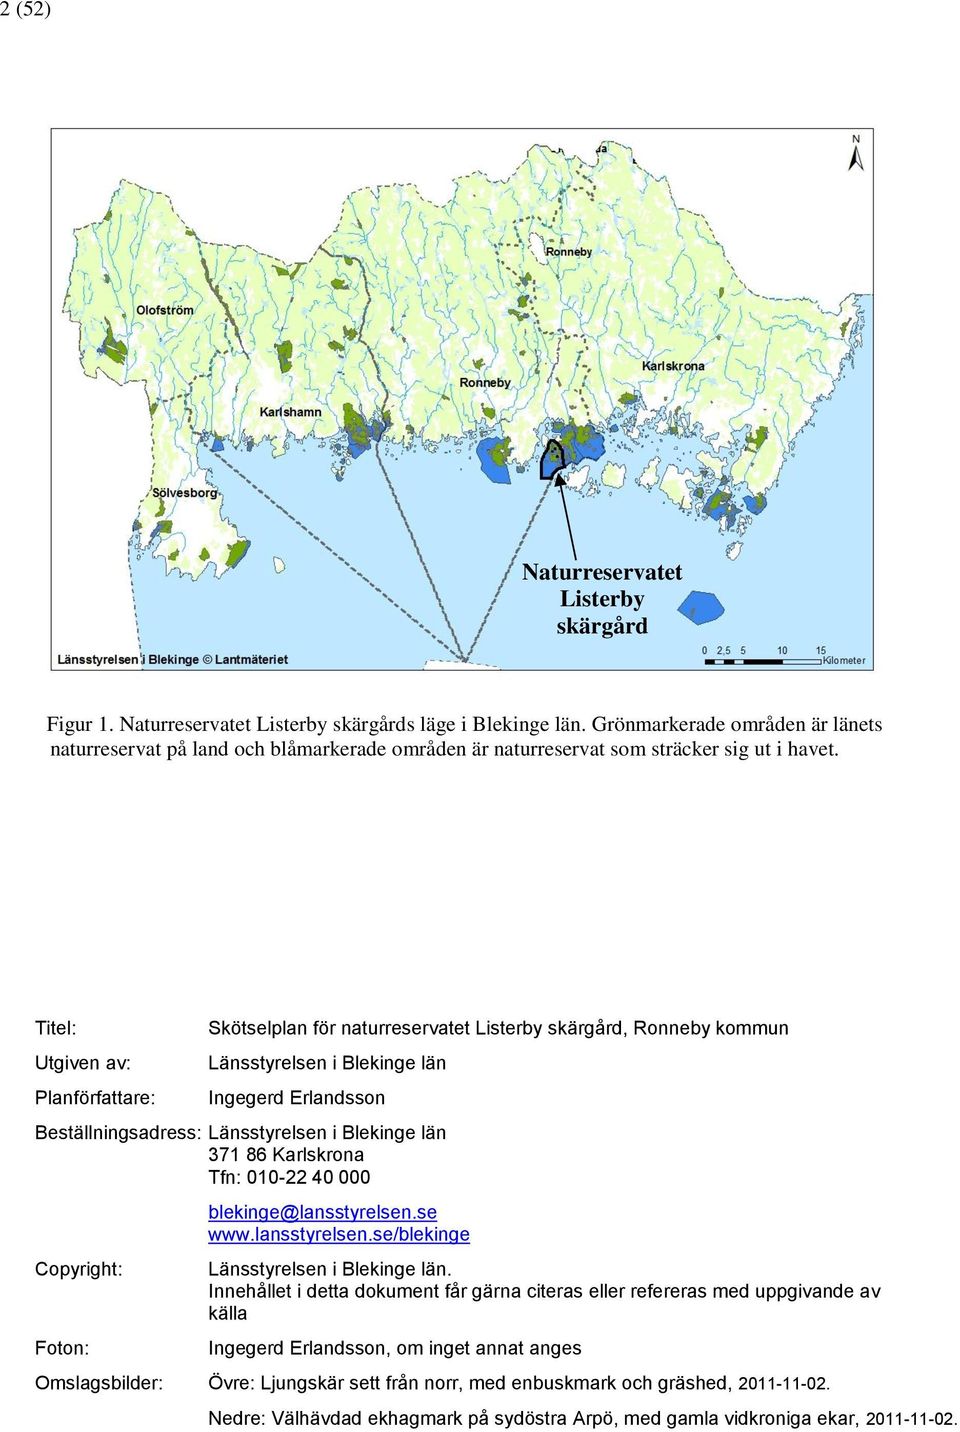 Titel: Utgiven av: Planförfattare: Skötselplan för naturreservatet Listerby skärgård, Ronneby kommun Länsstyrelsen i Blekinge län Ingegerd Erlandsson Beställningsadress: Länsstyrelsen i Blekinge län